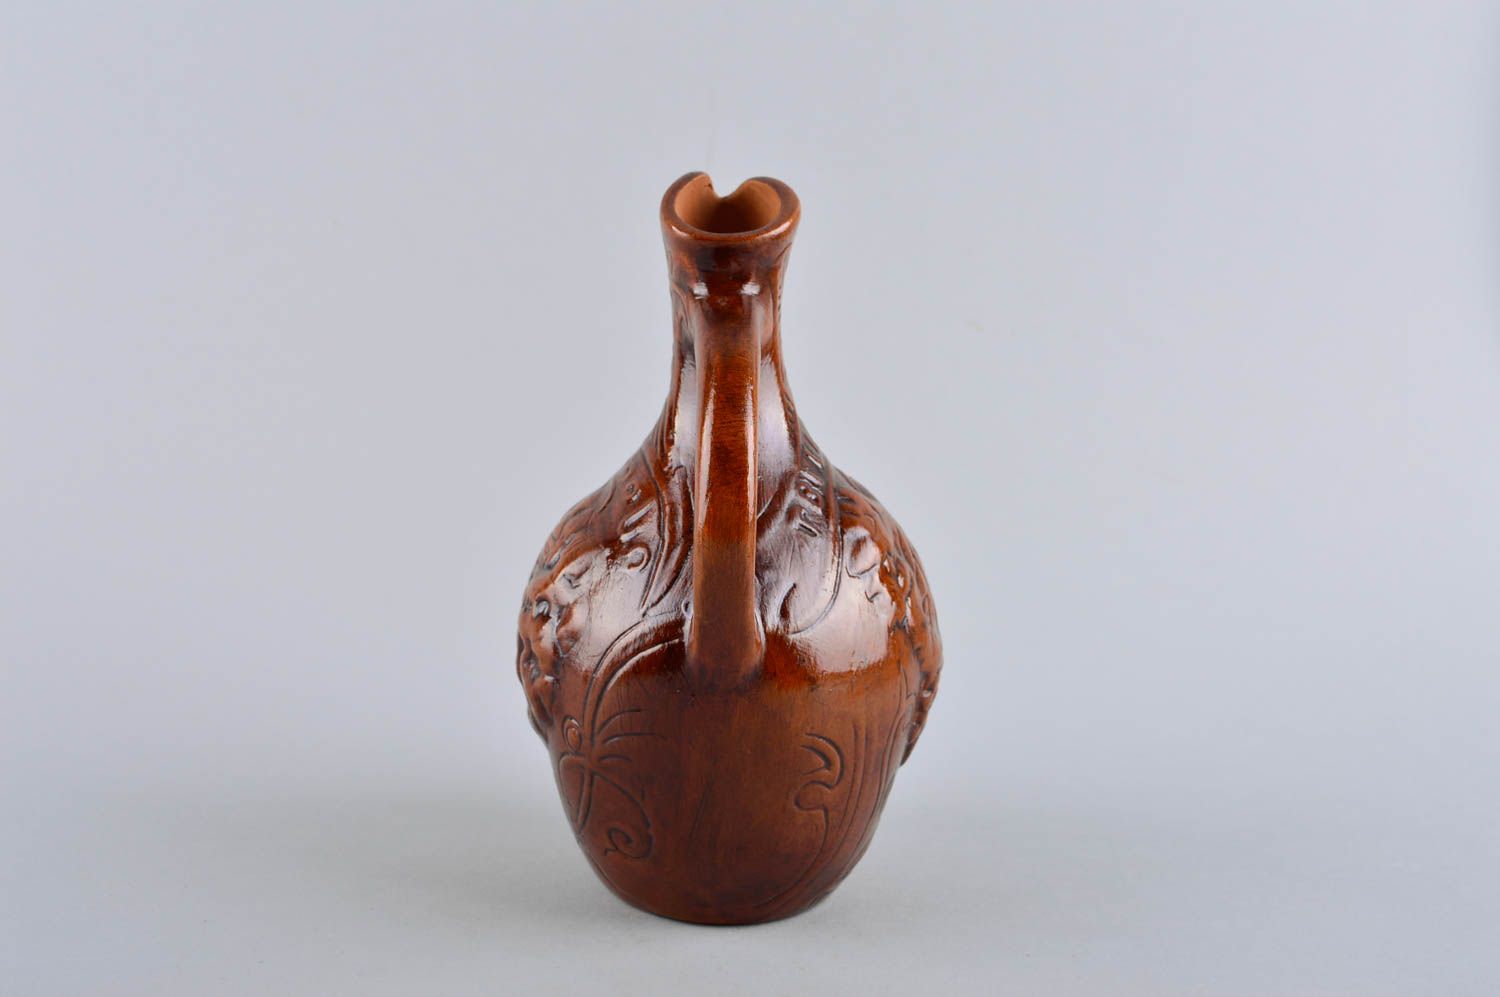 15 oz ceramic glazed white or vodka carafe in brown color 0,8 lb photo 3